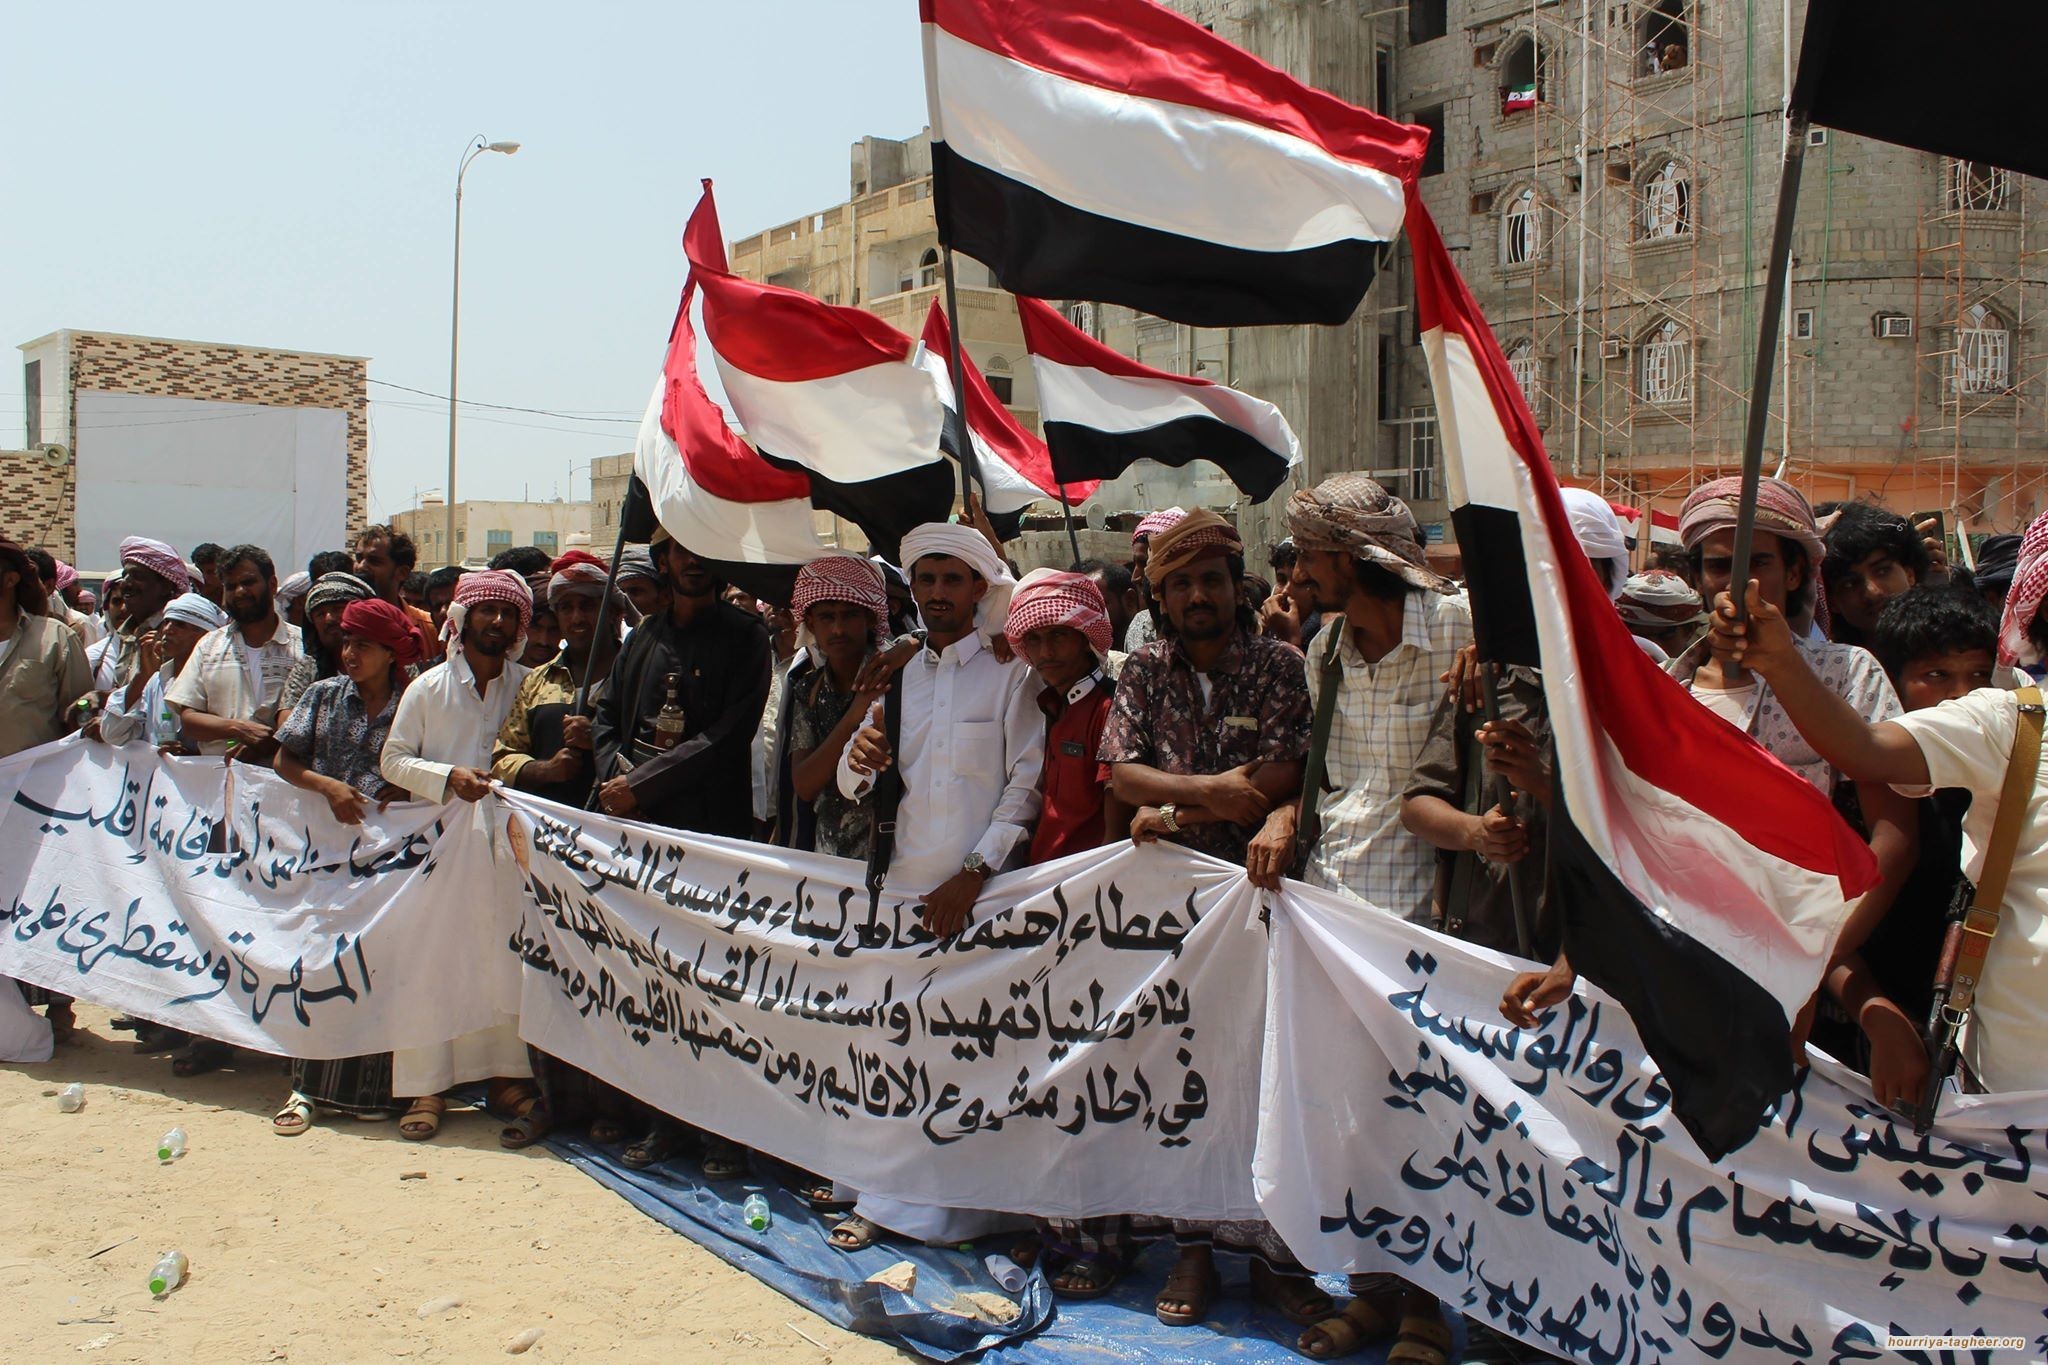 تحرك شعبي جديد ضد الاحتلال السعودي للمهرة